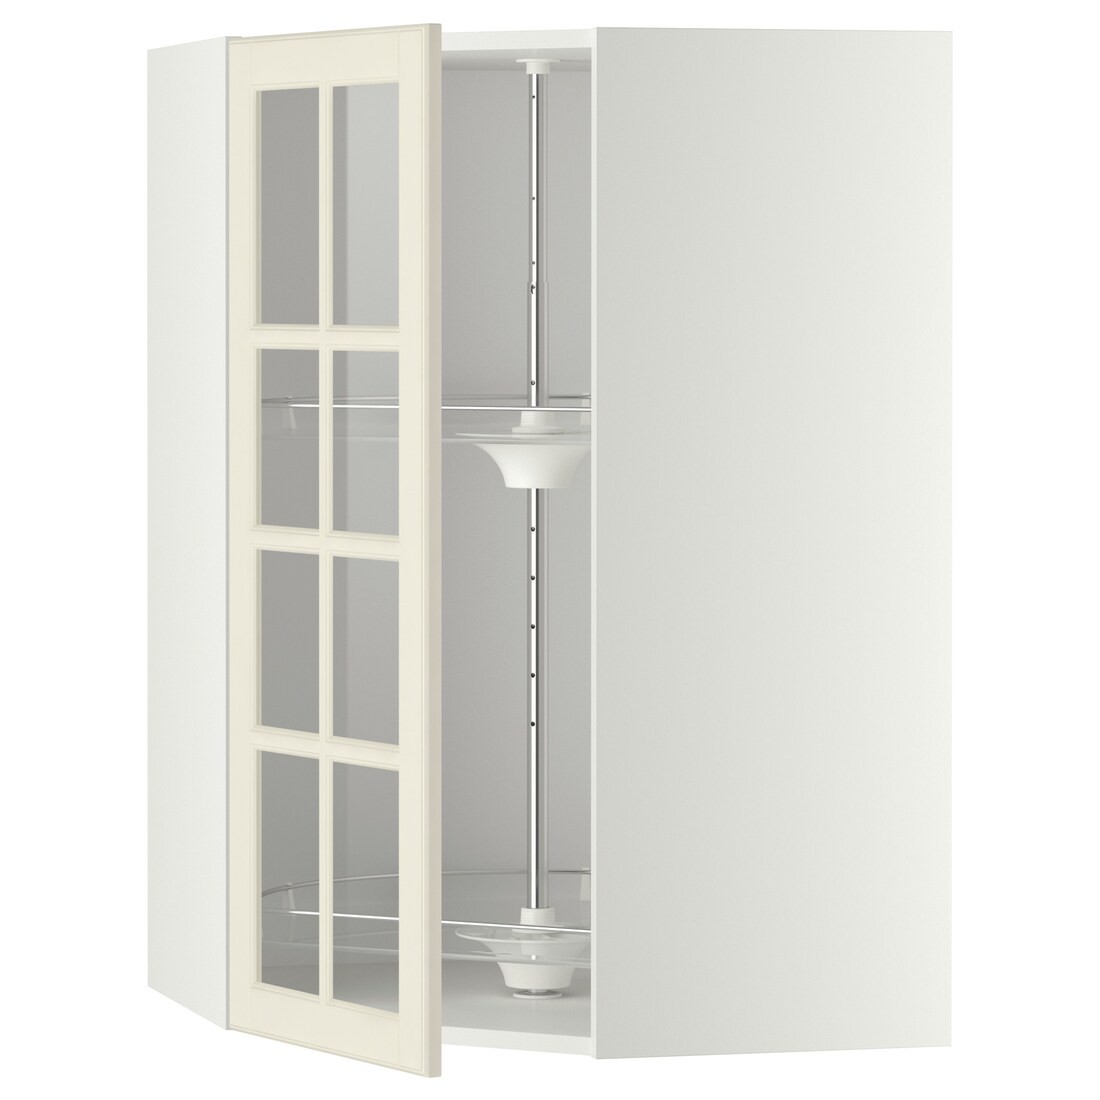 IKEA METOD МЕТОД Угловой настенный шкаф с каруселью / стеклянная дверь, белый / Bodbyn кремовый, 68x100 см 39394992 393.949.92